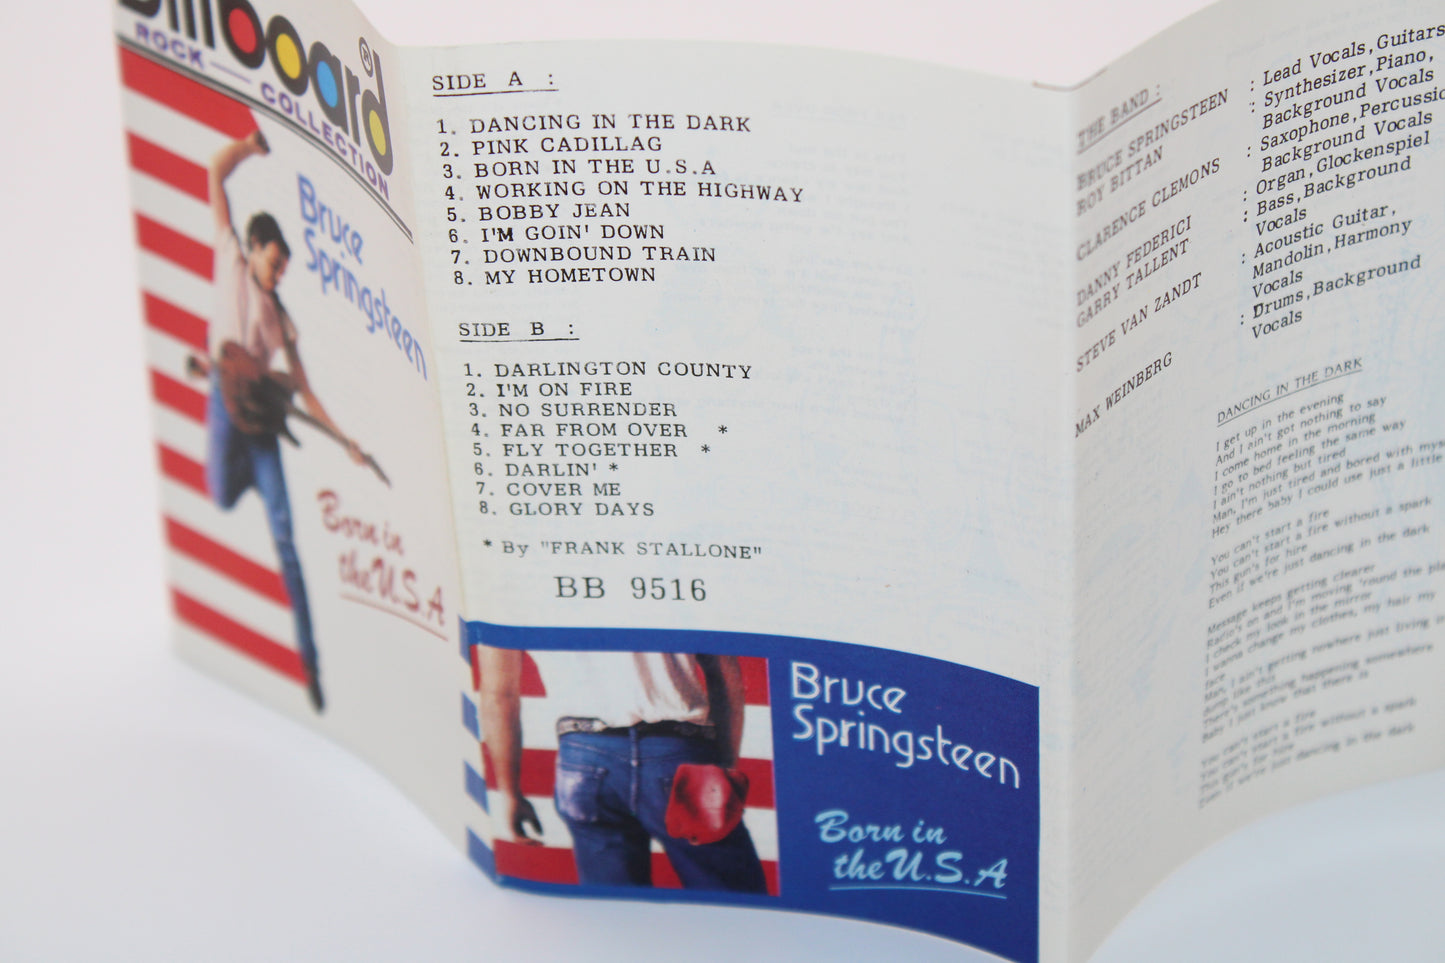 Bruce Springsteen - Born in the USA Cassette Tape - Billboard Collection - Memorabilia